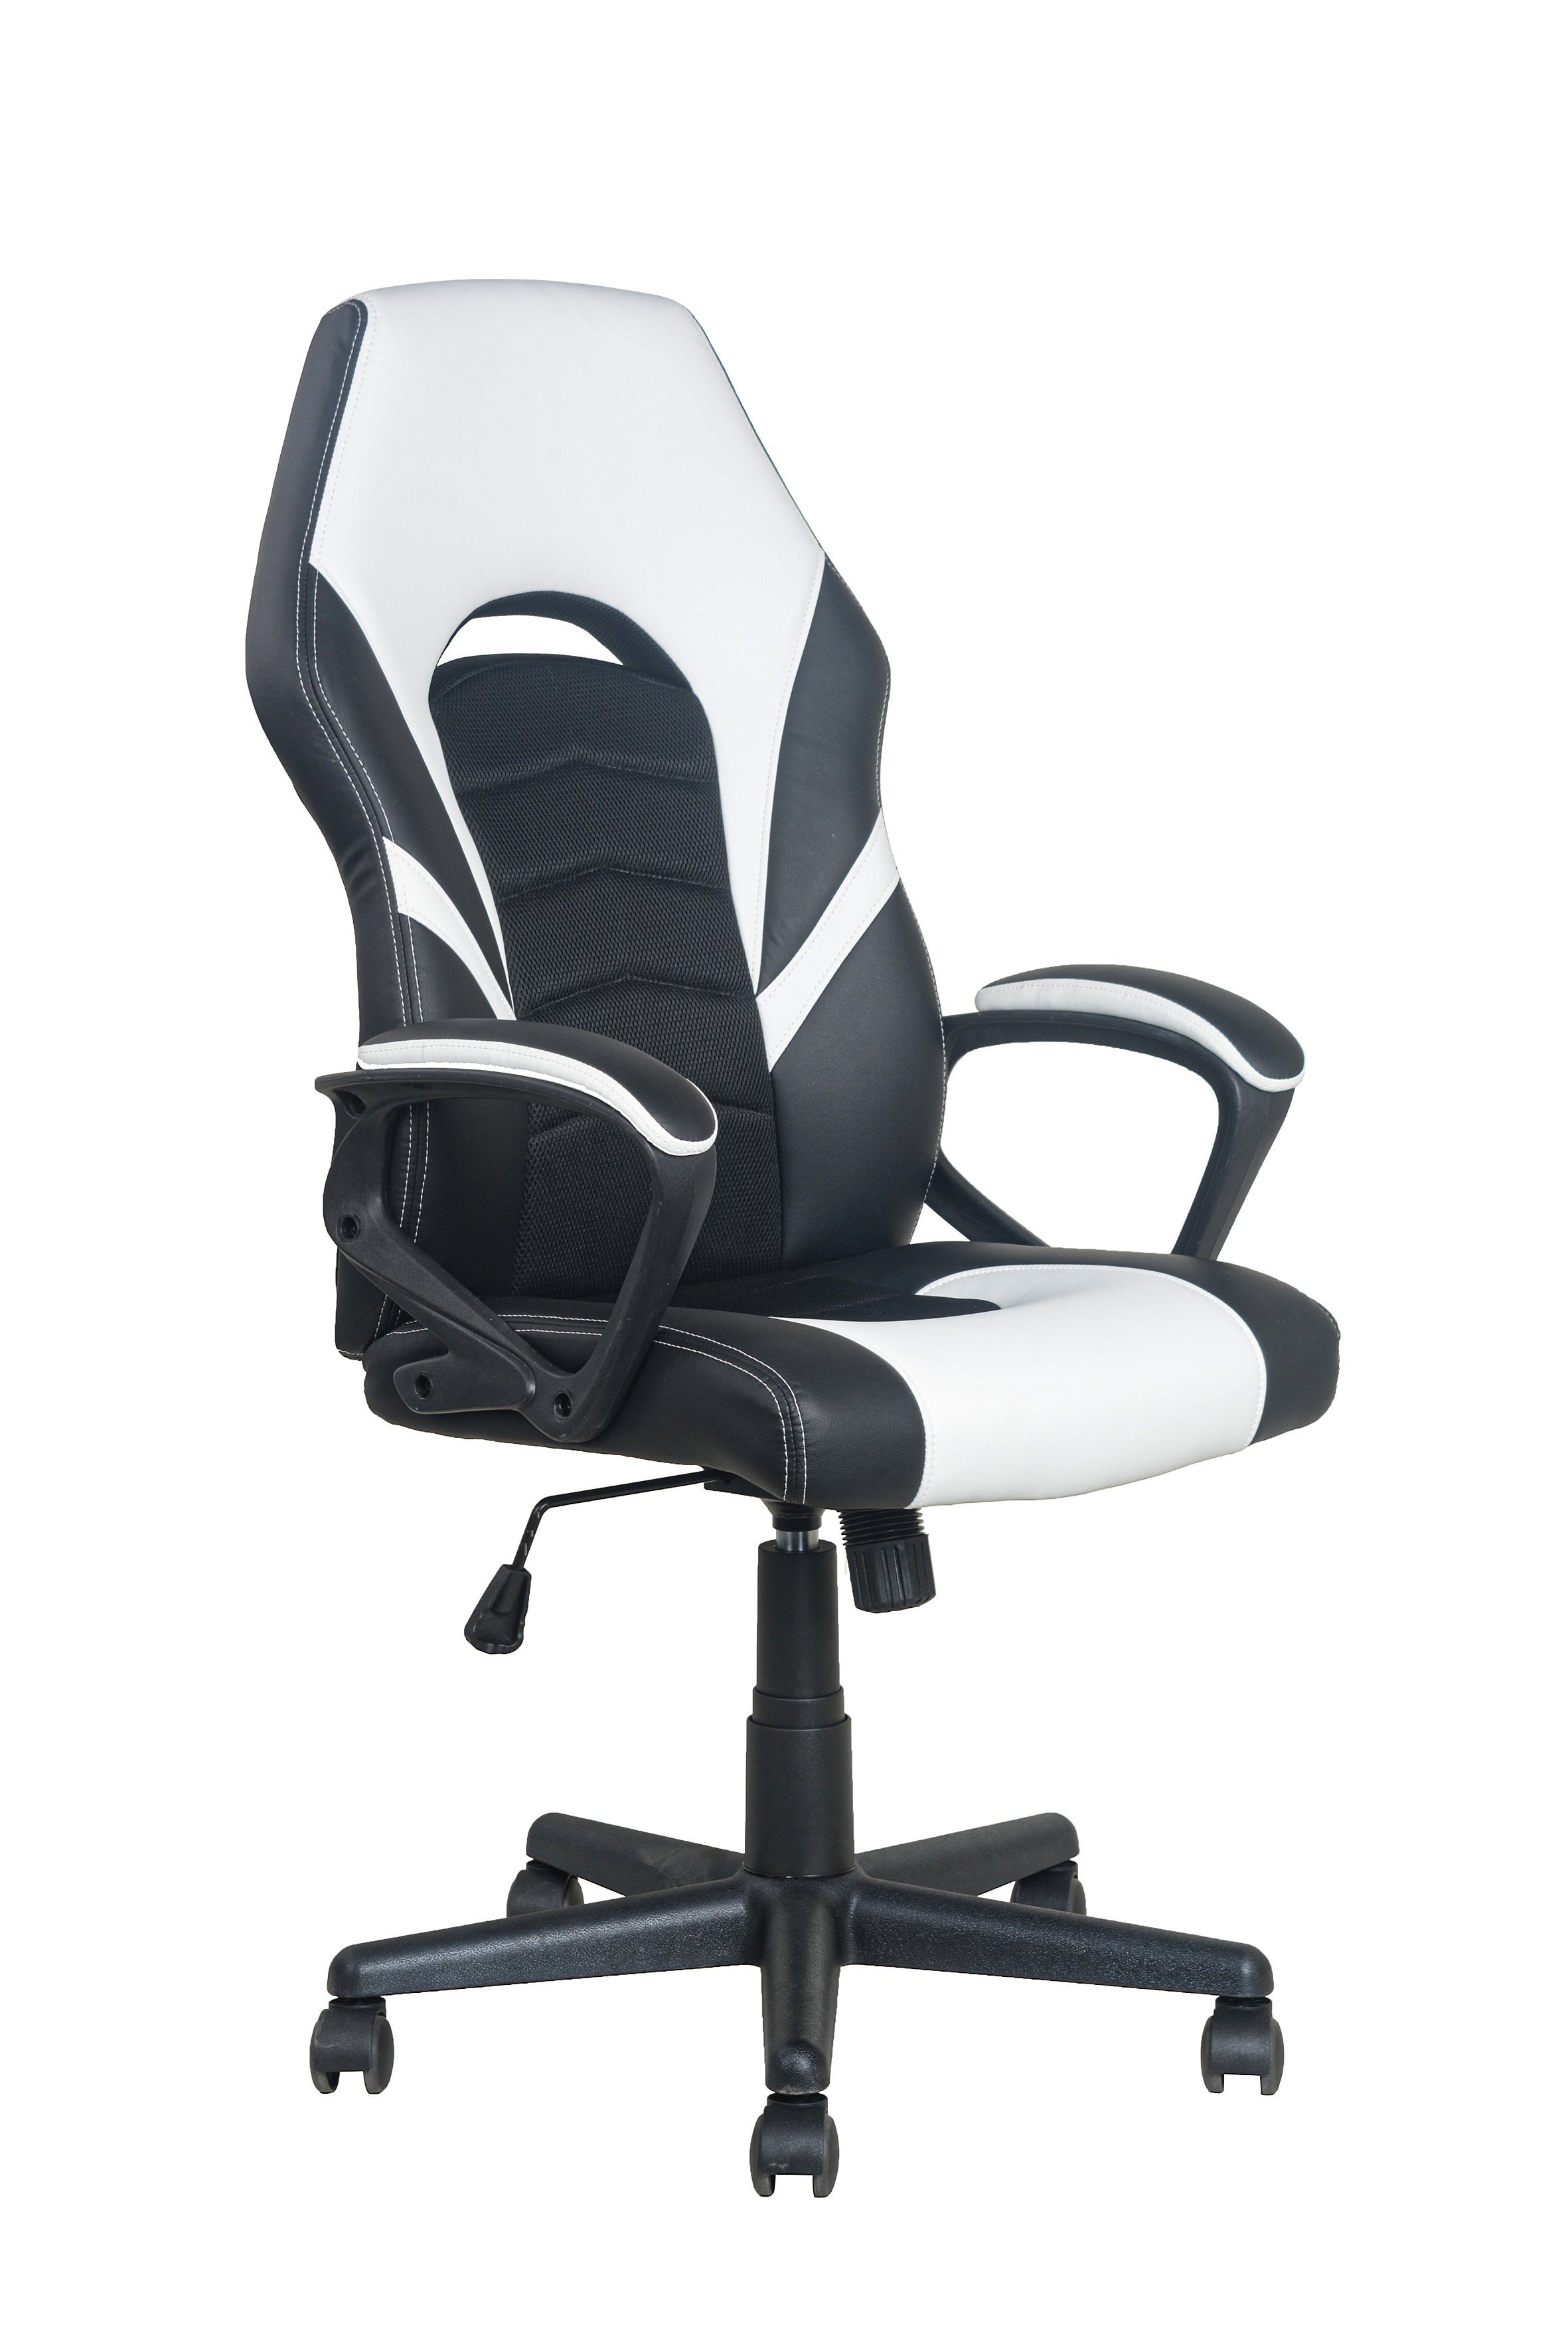 byLIVING Chefsessel FREEZE, Gaming-Stuhl mit Verstellmöglichkeiten schwarz/weiß